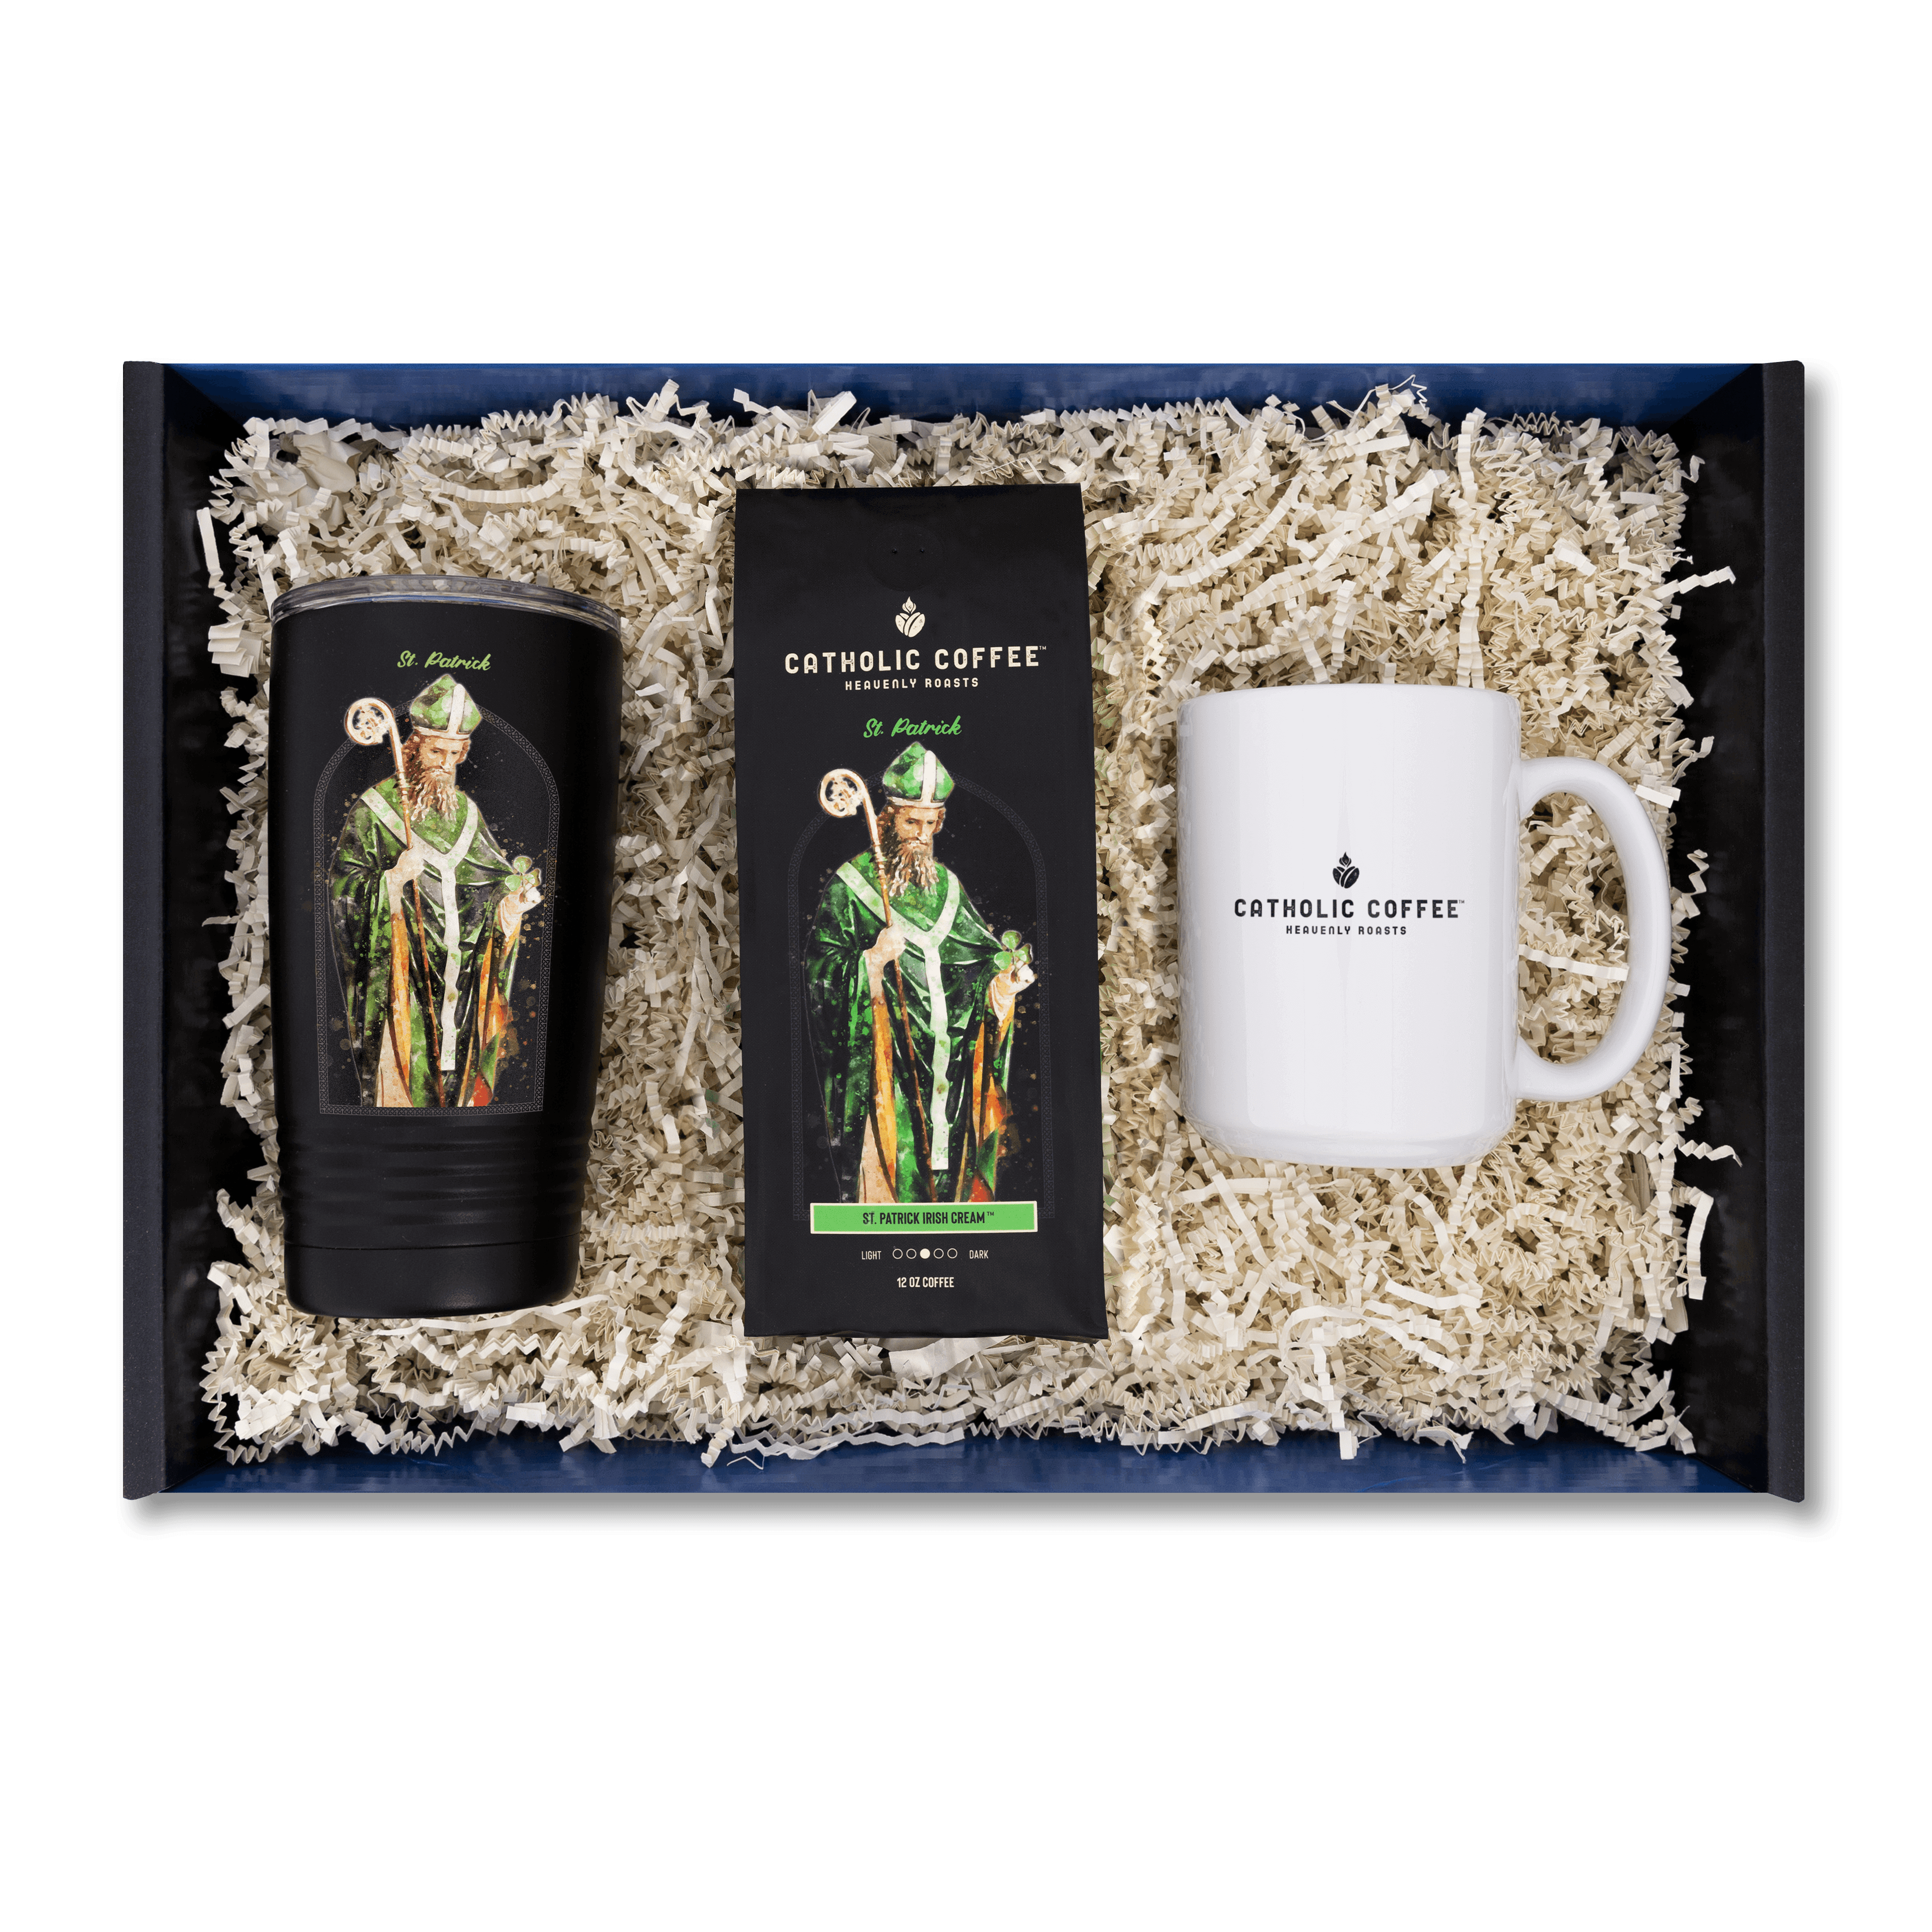 St. Patrick Irish Cream and Coffee Mug Gift Set